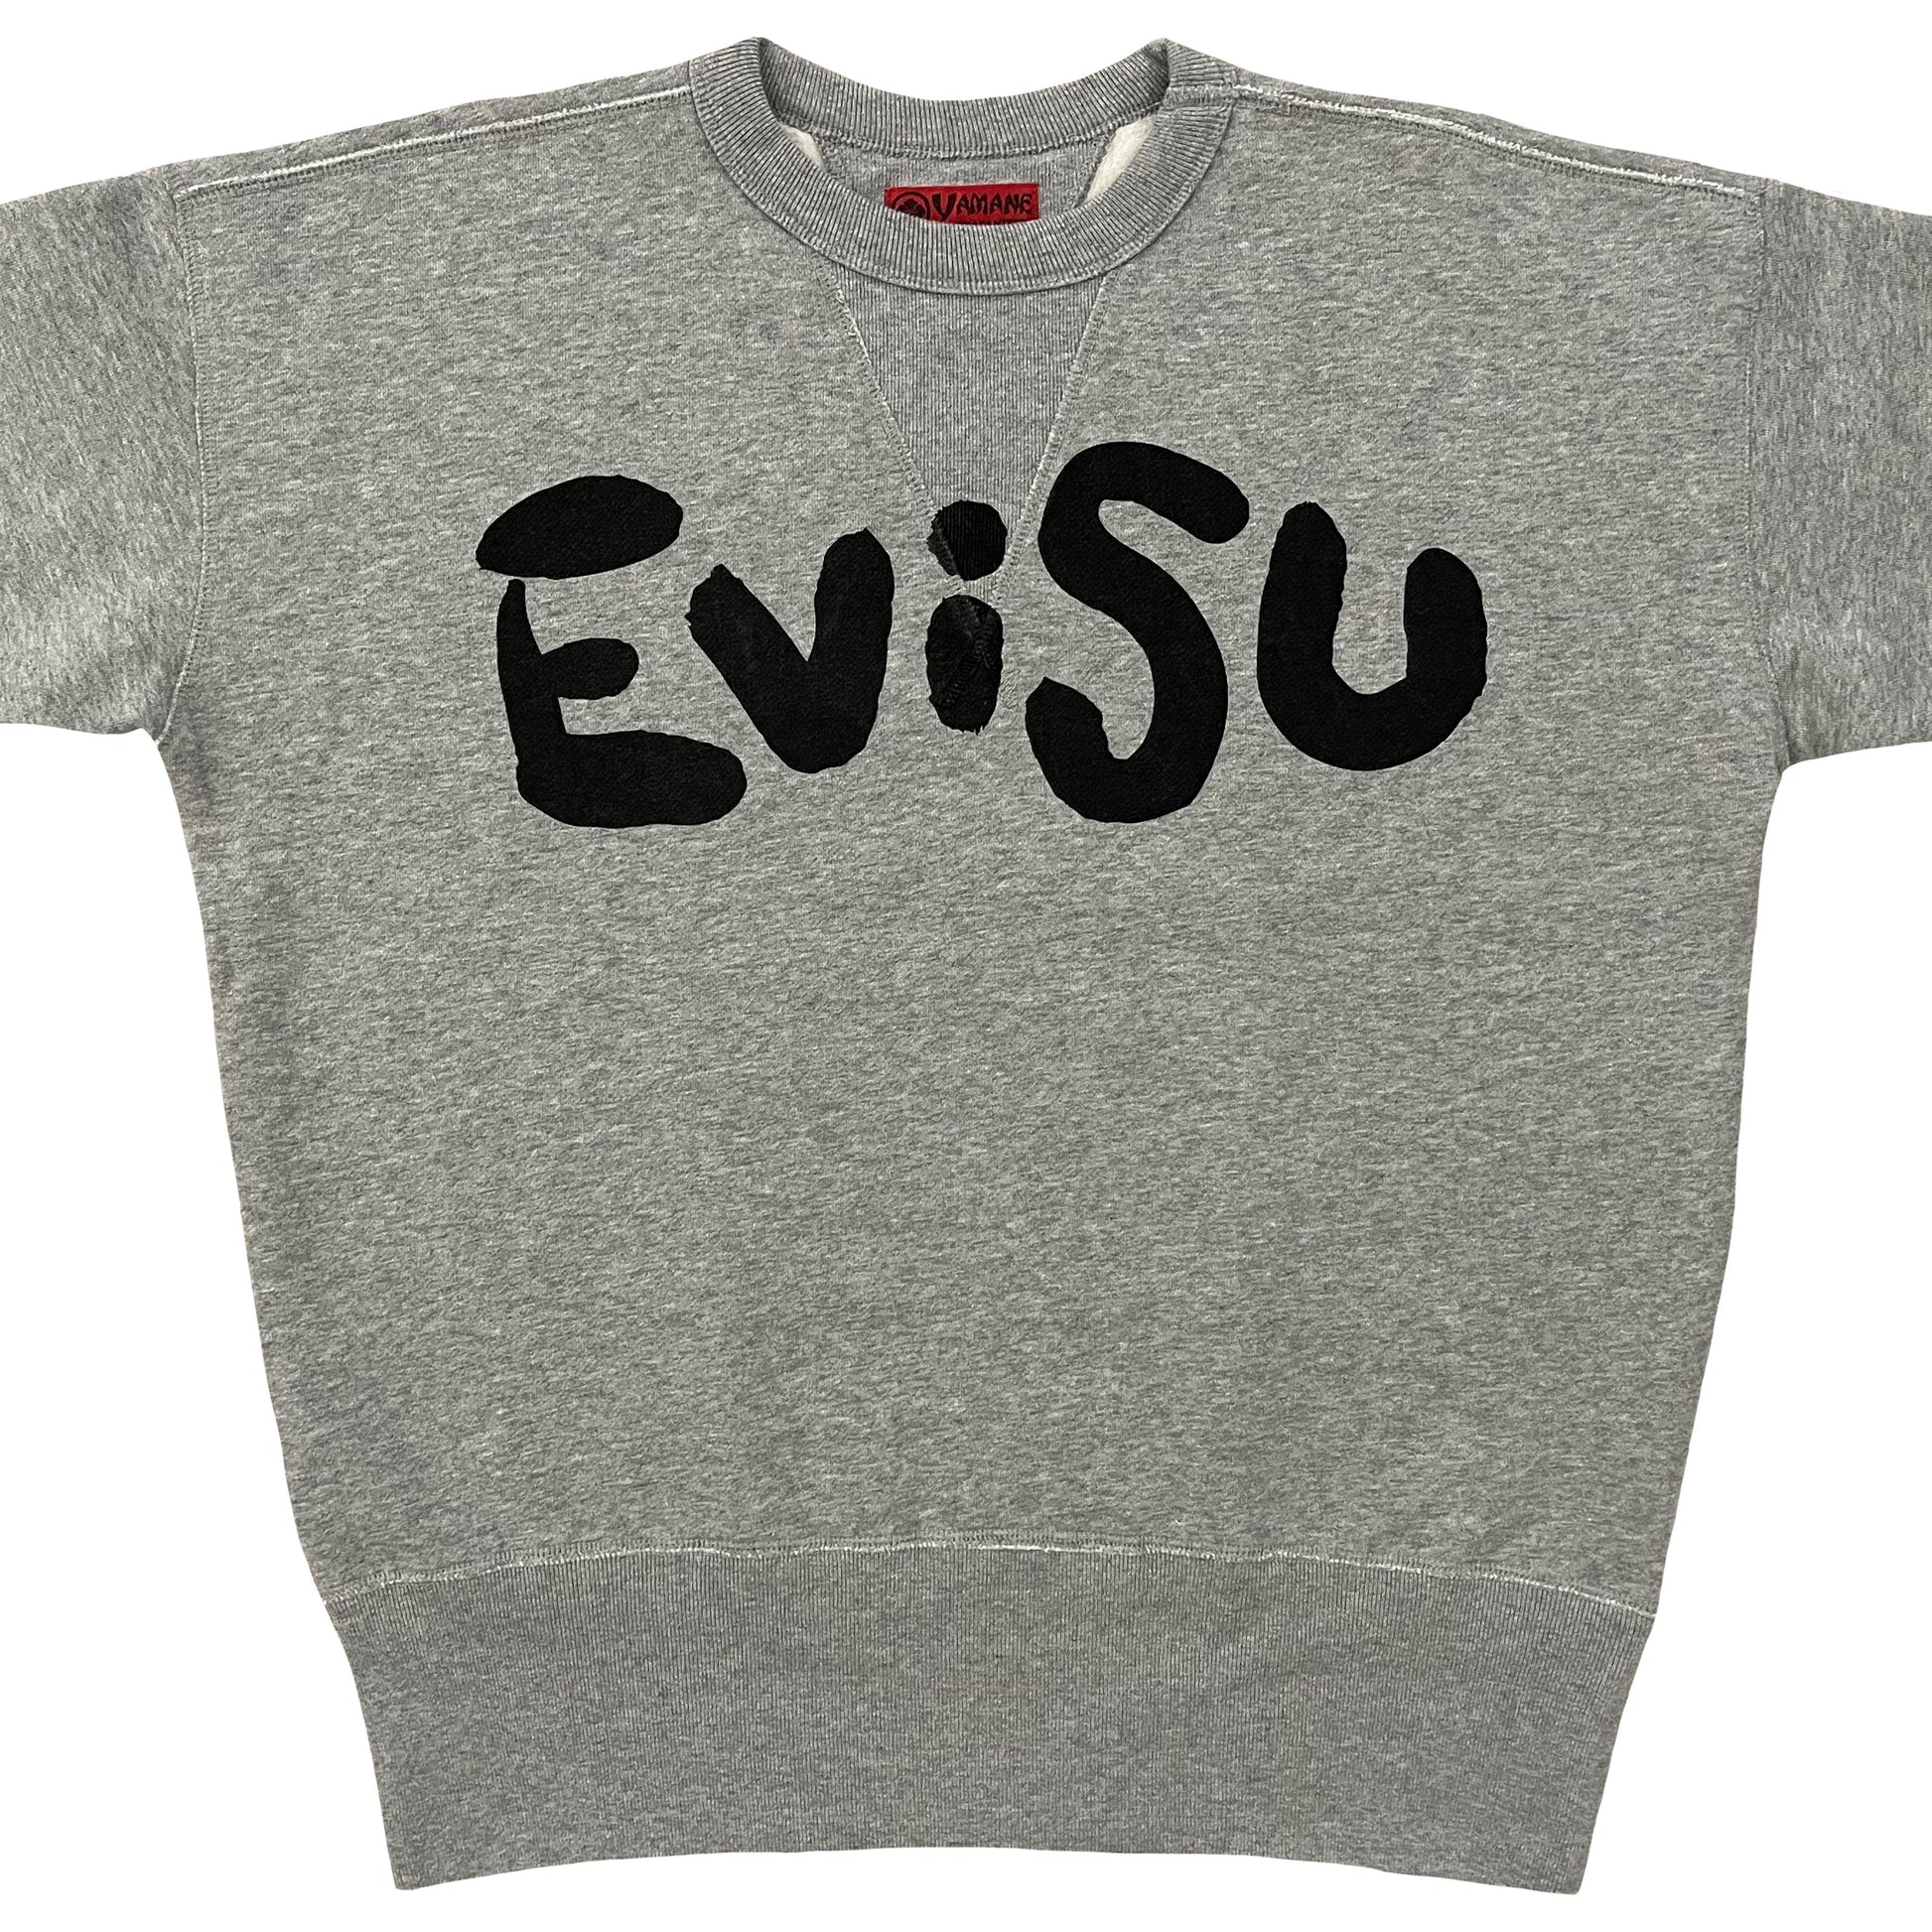 Evisu Sweatshirt - Known Source